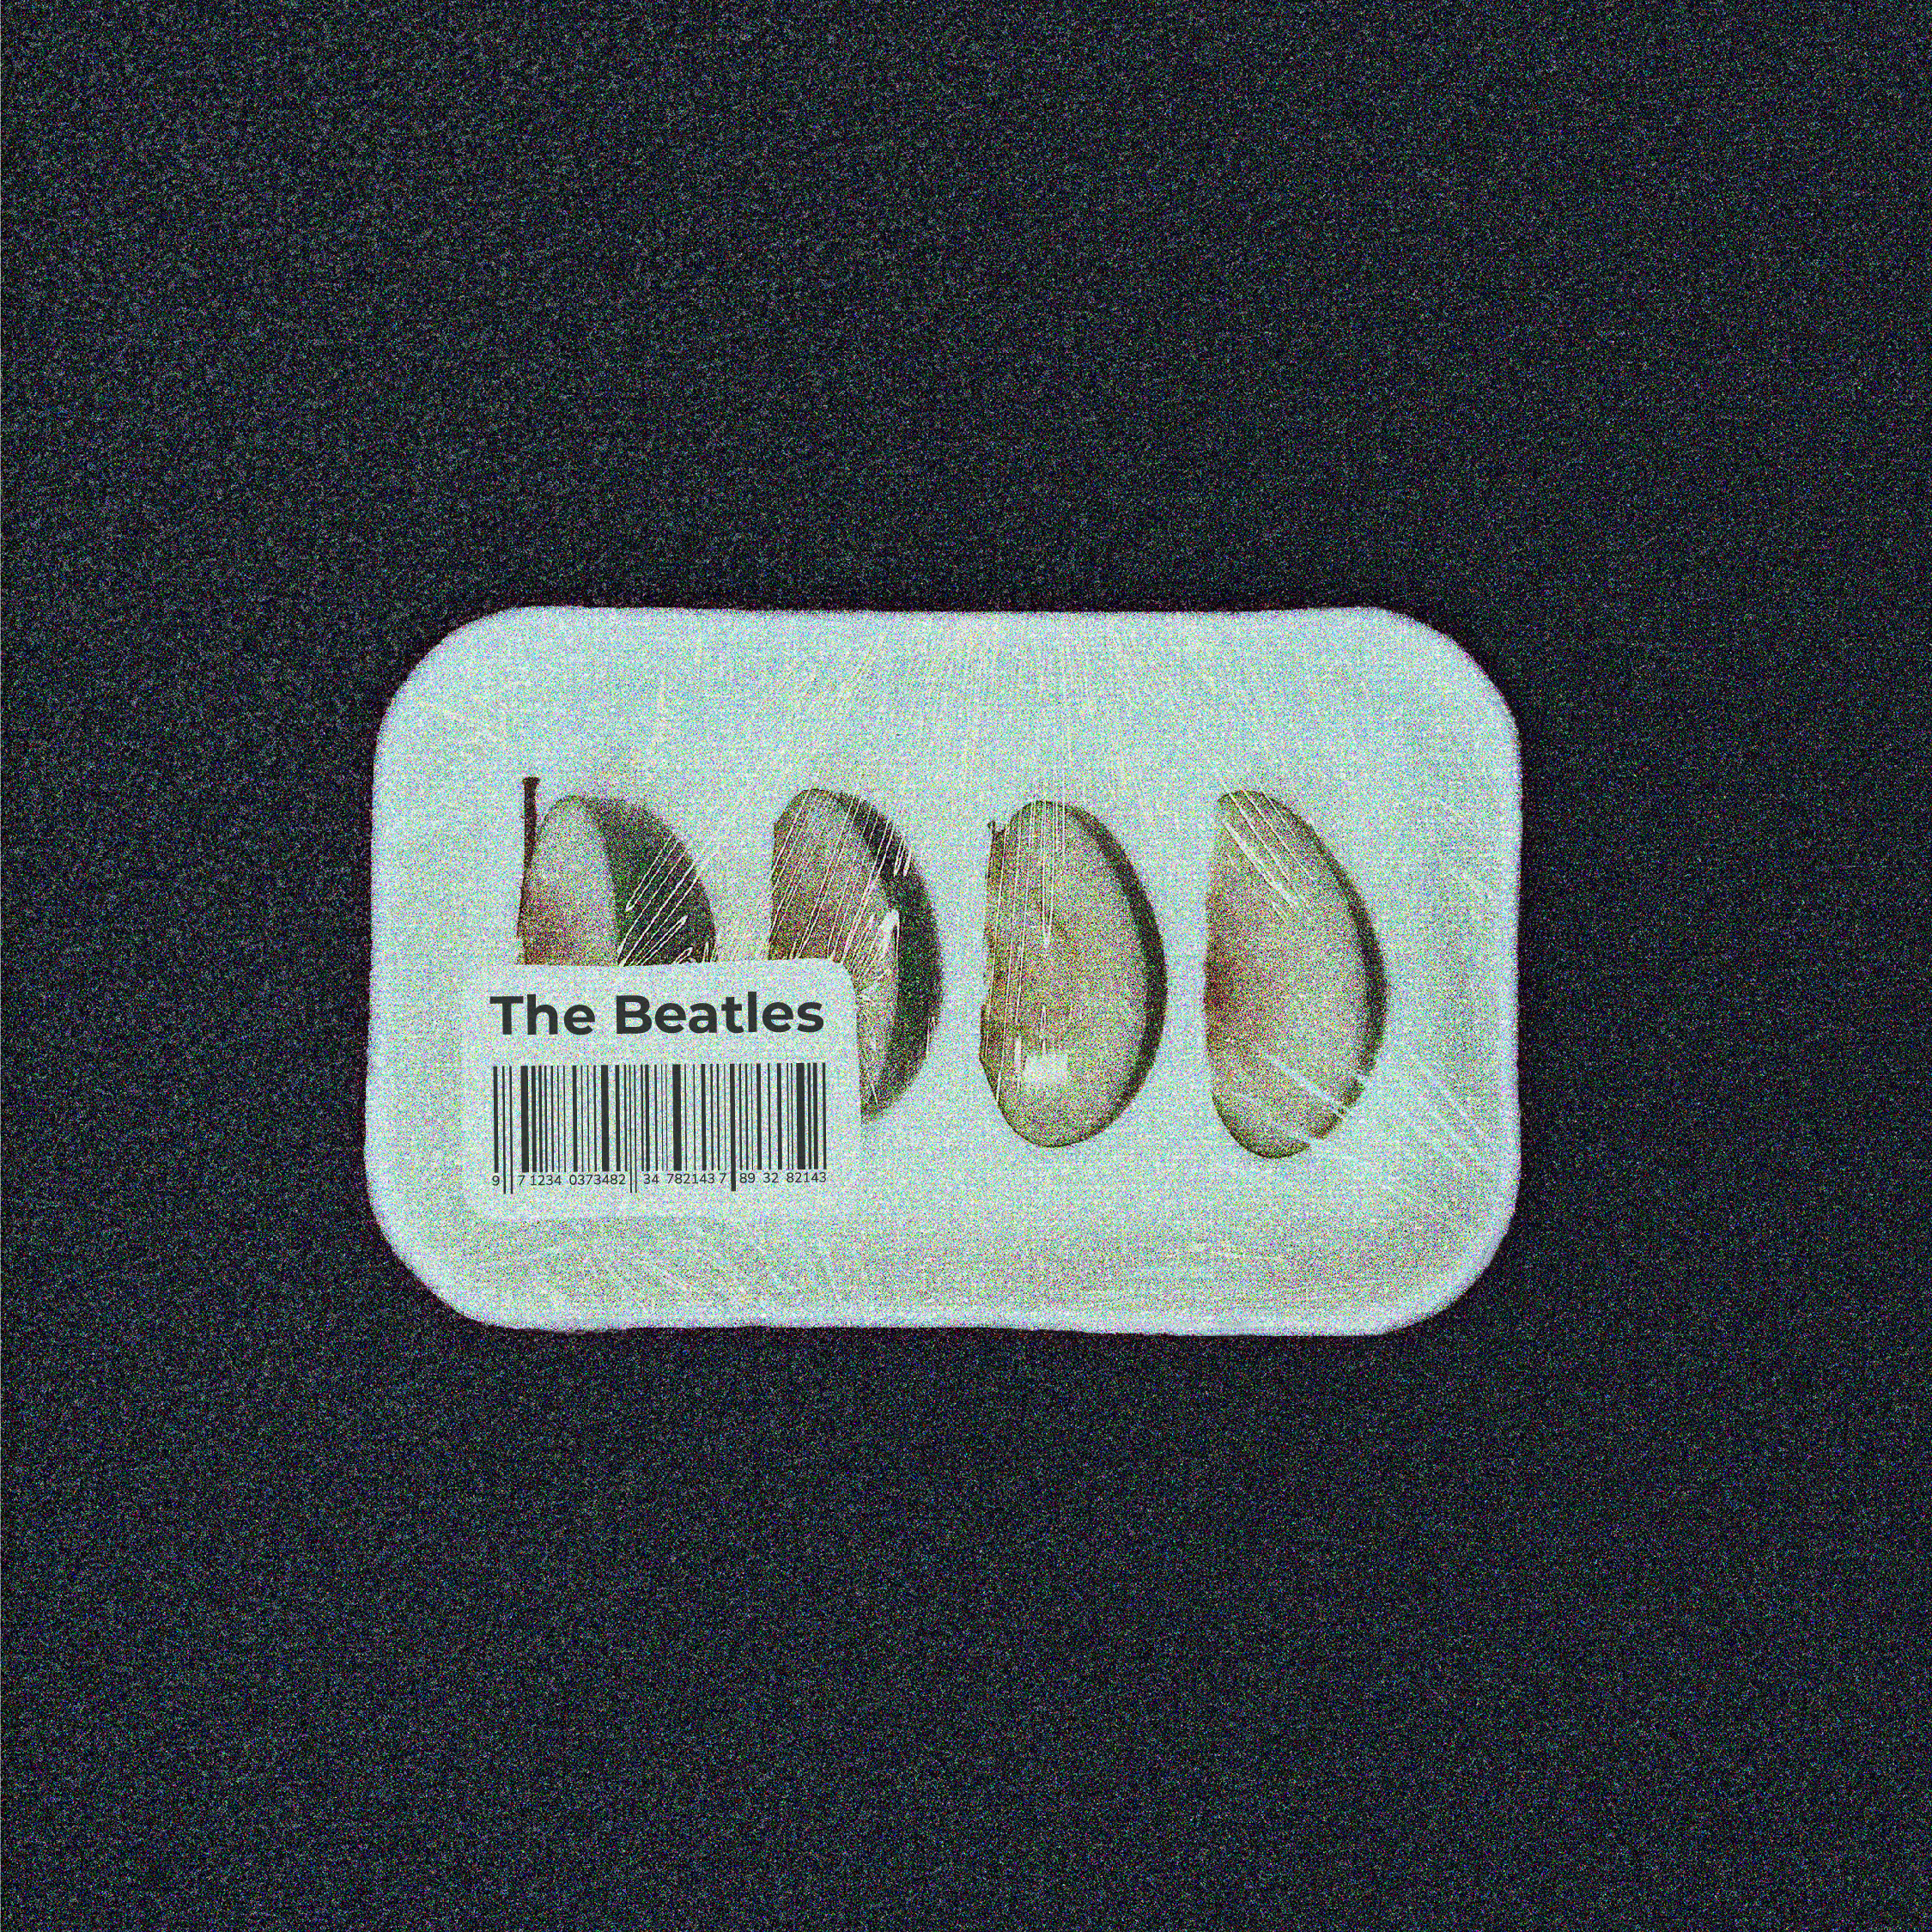 visuel de la pochette de vinyle dont le visuel présente une photo d'une barquette alimentaire dans laquelle se trouve des quartiers de pommes, avec une étiquette avec un code barre et le nom du groupe "Beatles". Sur fond noir.